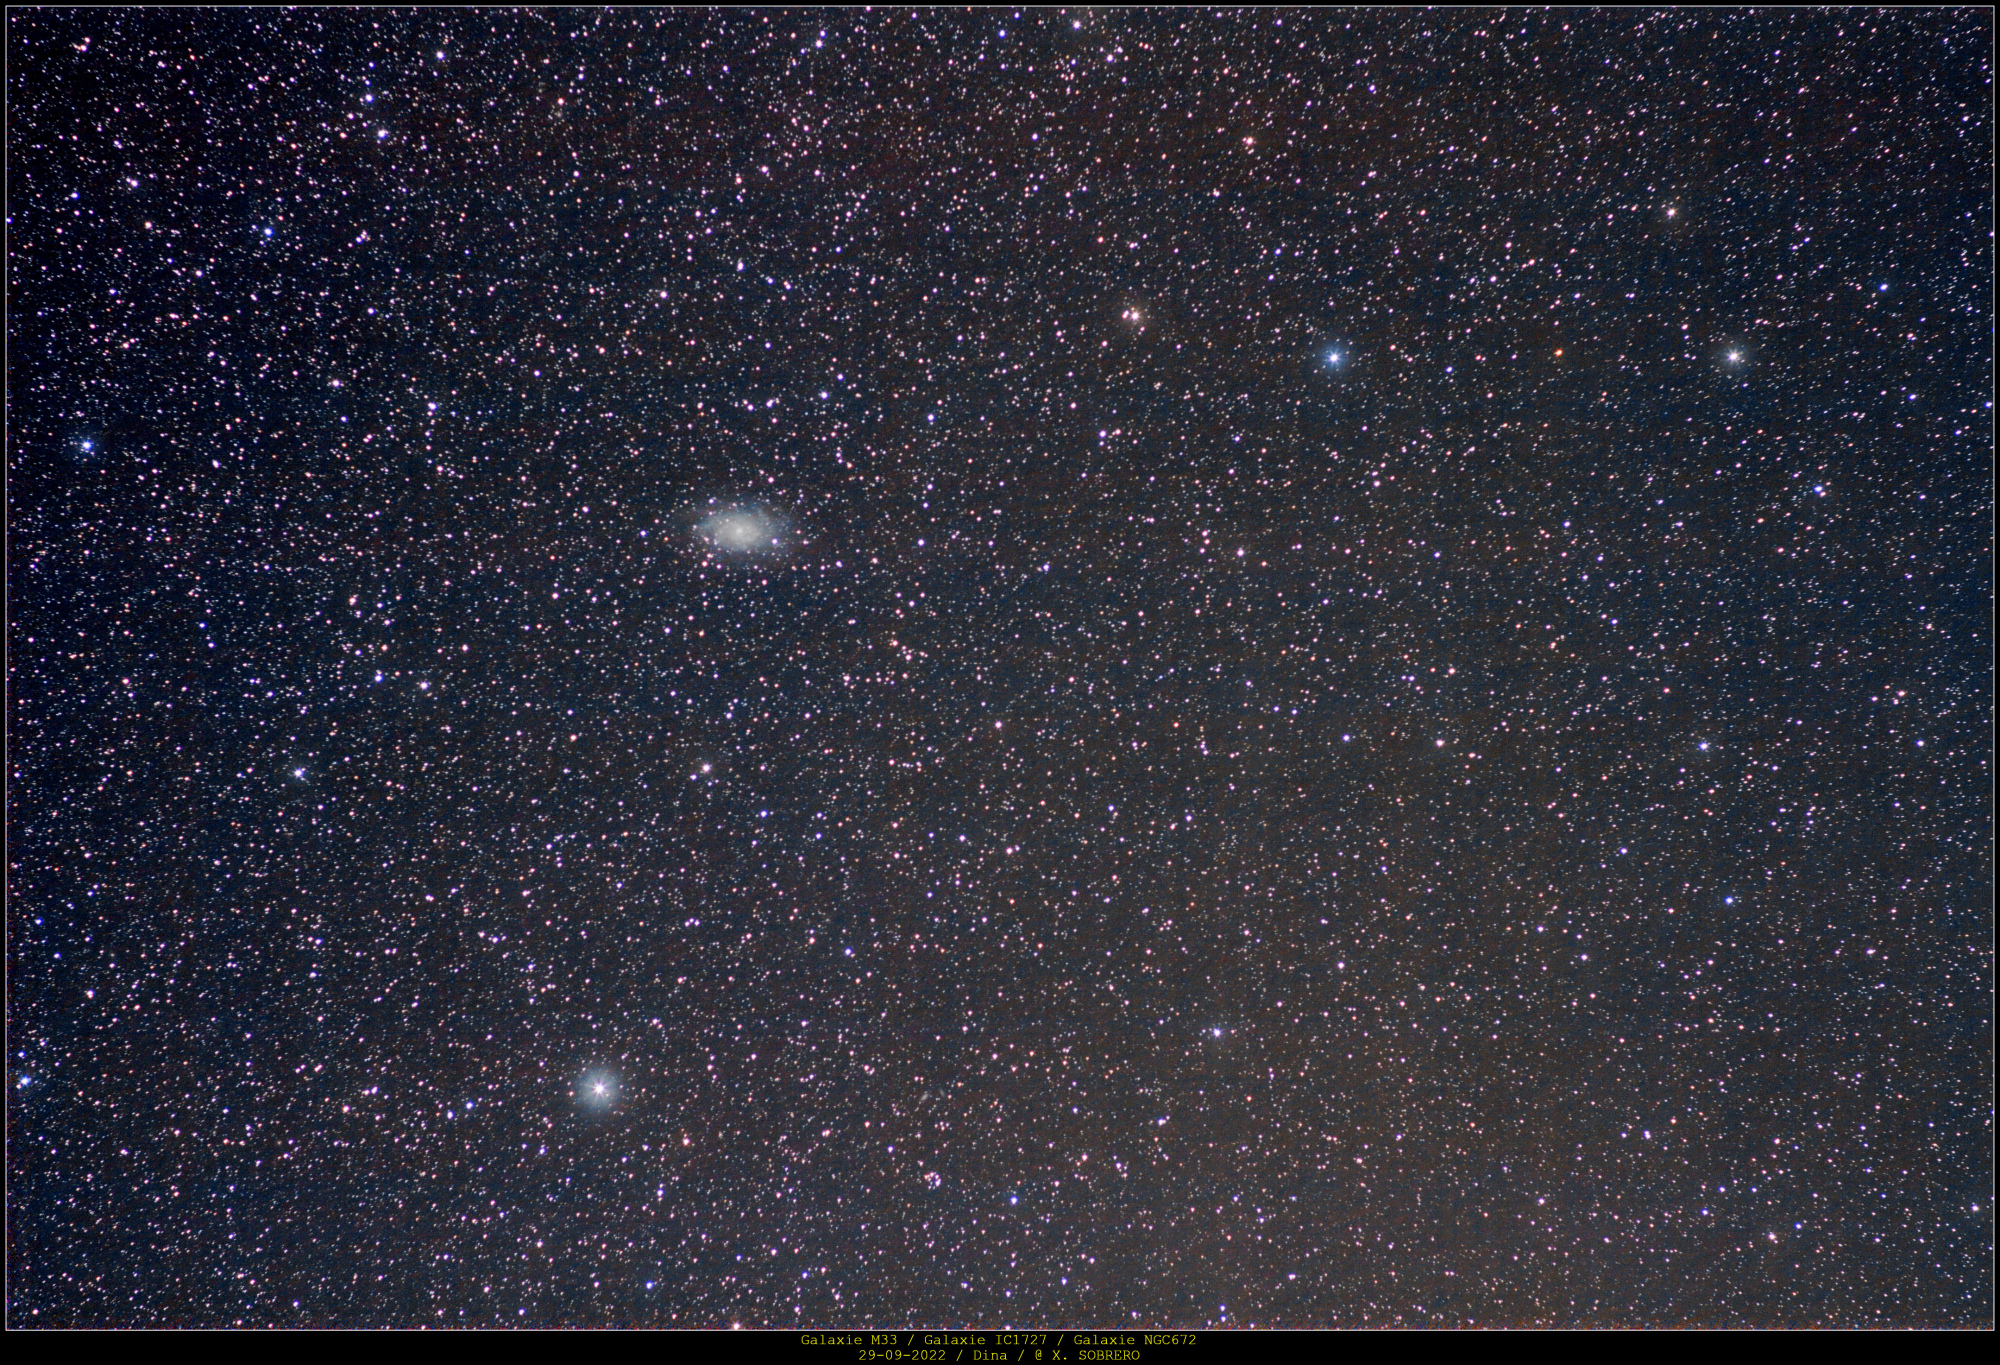 GALAXIES_GRAND-CHAMP_M33_IC1727_NGC672_29092022_DINA.thumb.jpg.565325810064796c7a3bf82e0f1c0e0c.jpg